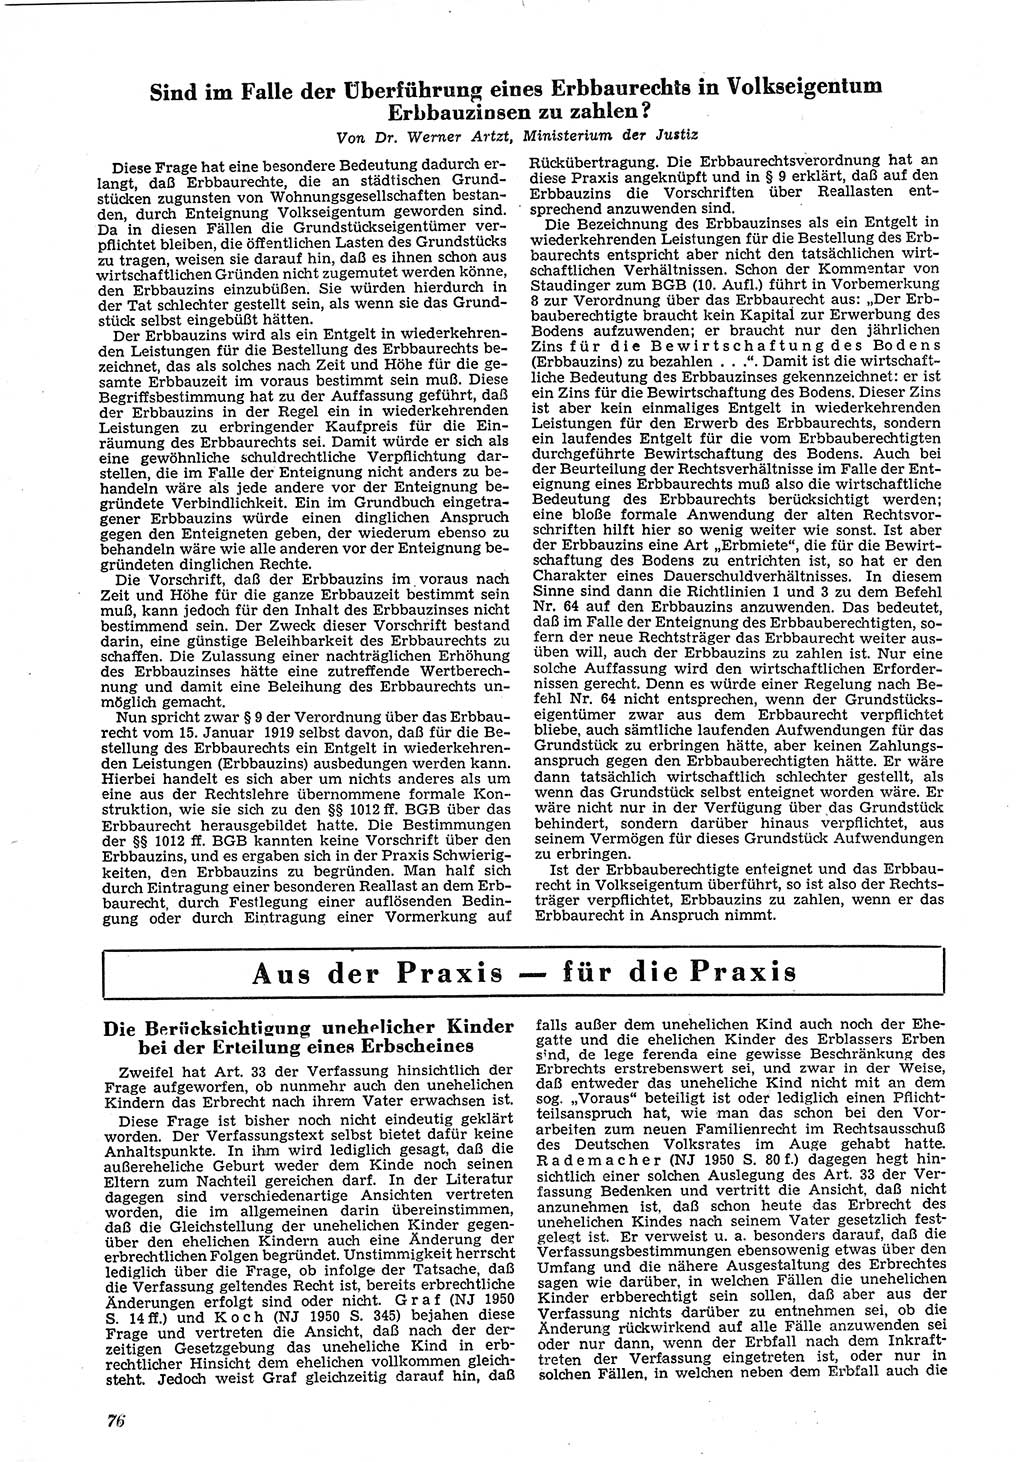 Neue Justiz (NJ), Zeitschrift für Recht und Rechtswissenschaft [Deutsche Demokratische Republik (DDR)], 5. Jahrgang 1951, Seite 76 (NJ DDR 1951, S. 76)